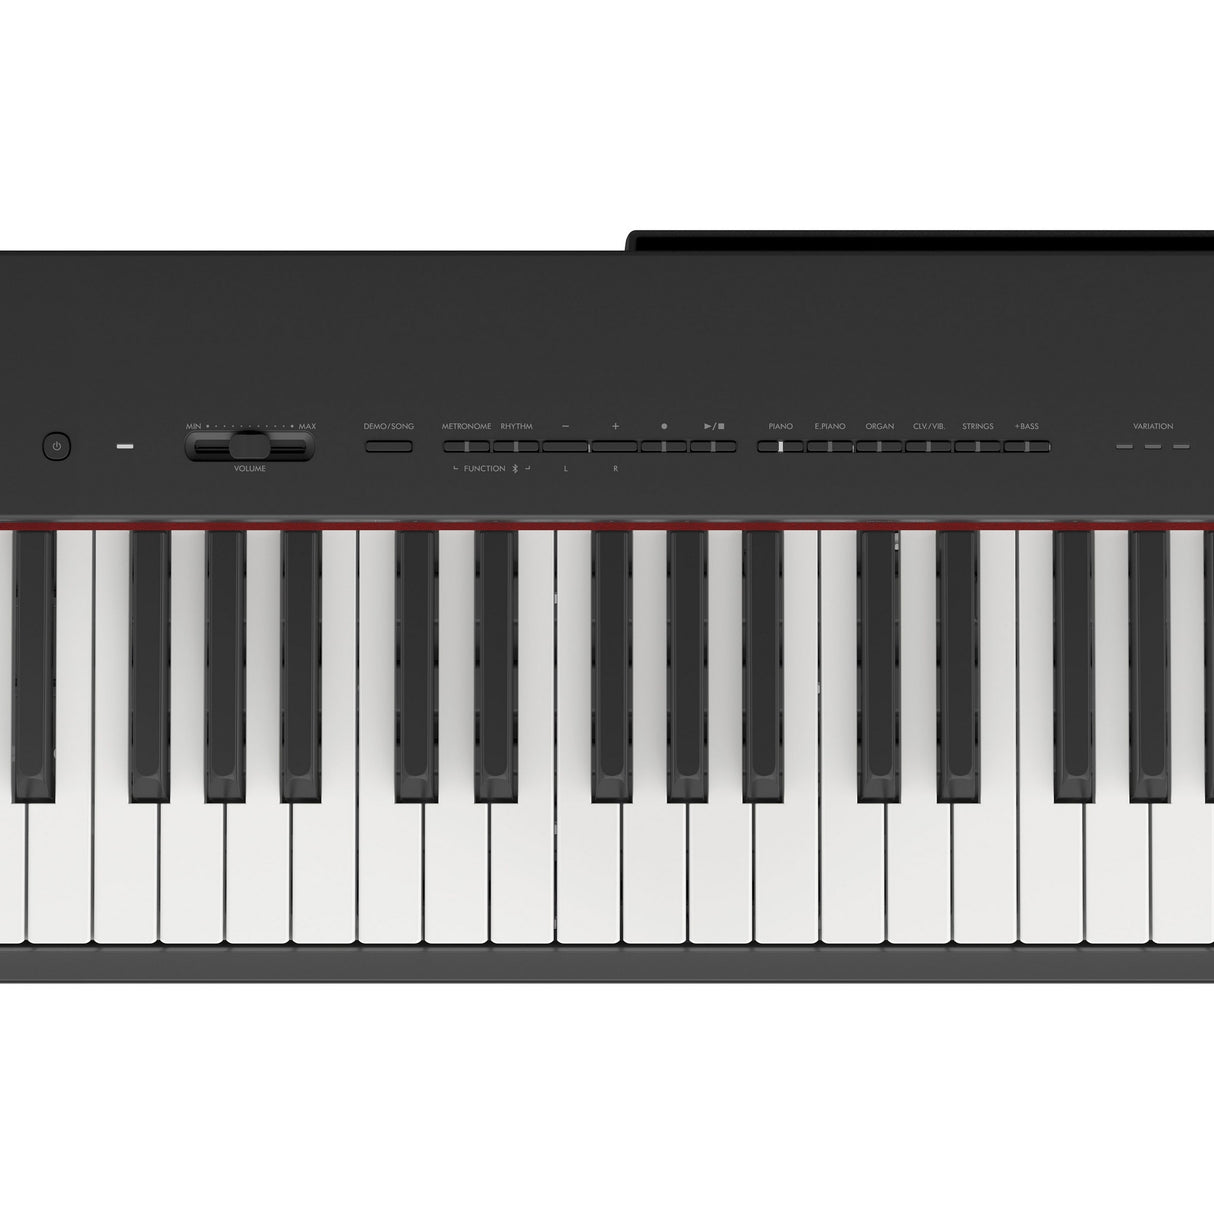 Yamaha P-225 88-Note GHC Digital Piano, Black